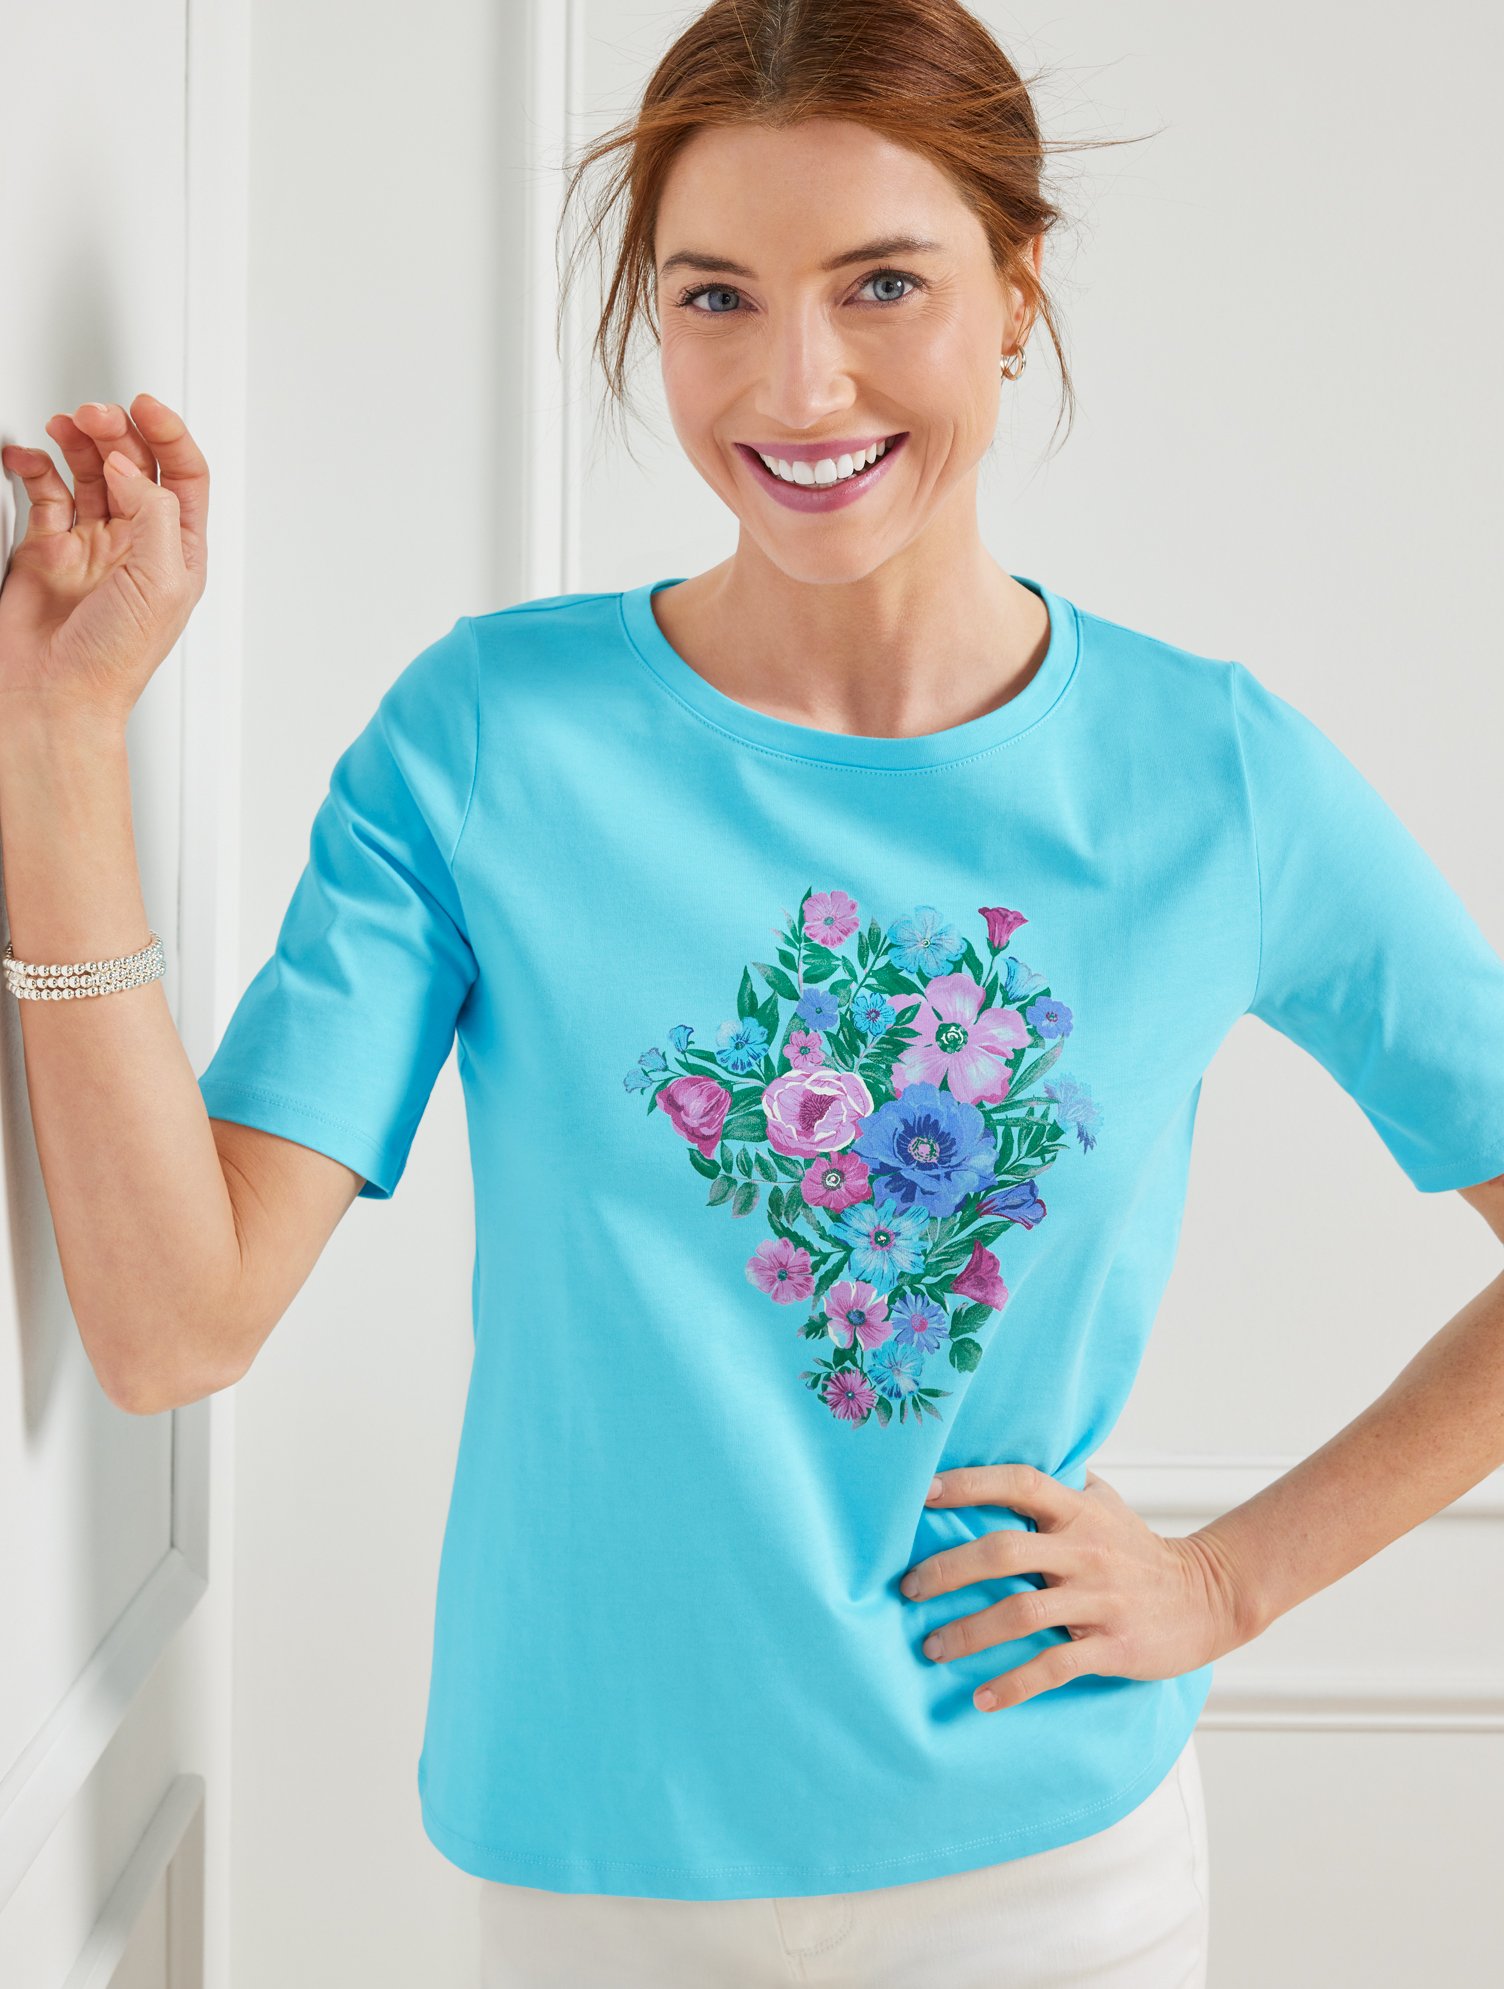 Talbots Crewneck T-shirt - Flower Bouquet - Lovely Blue - 2x